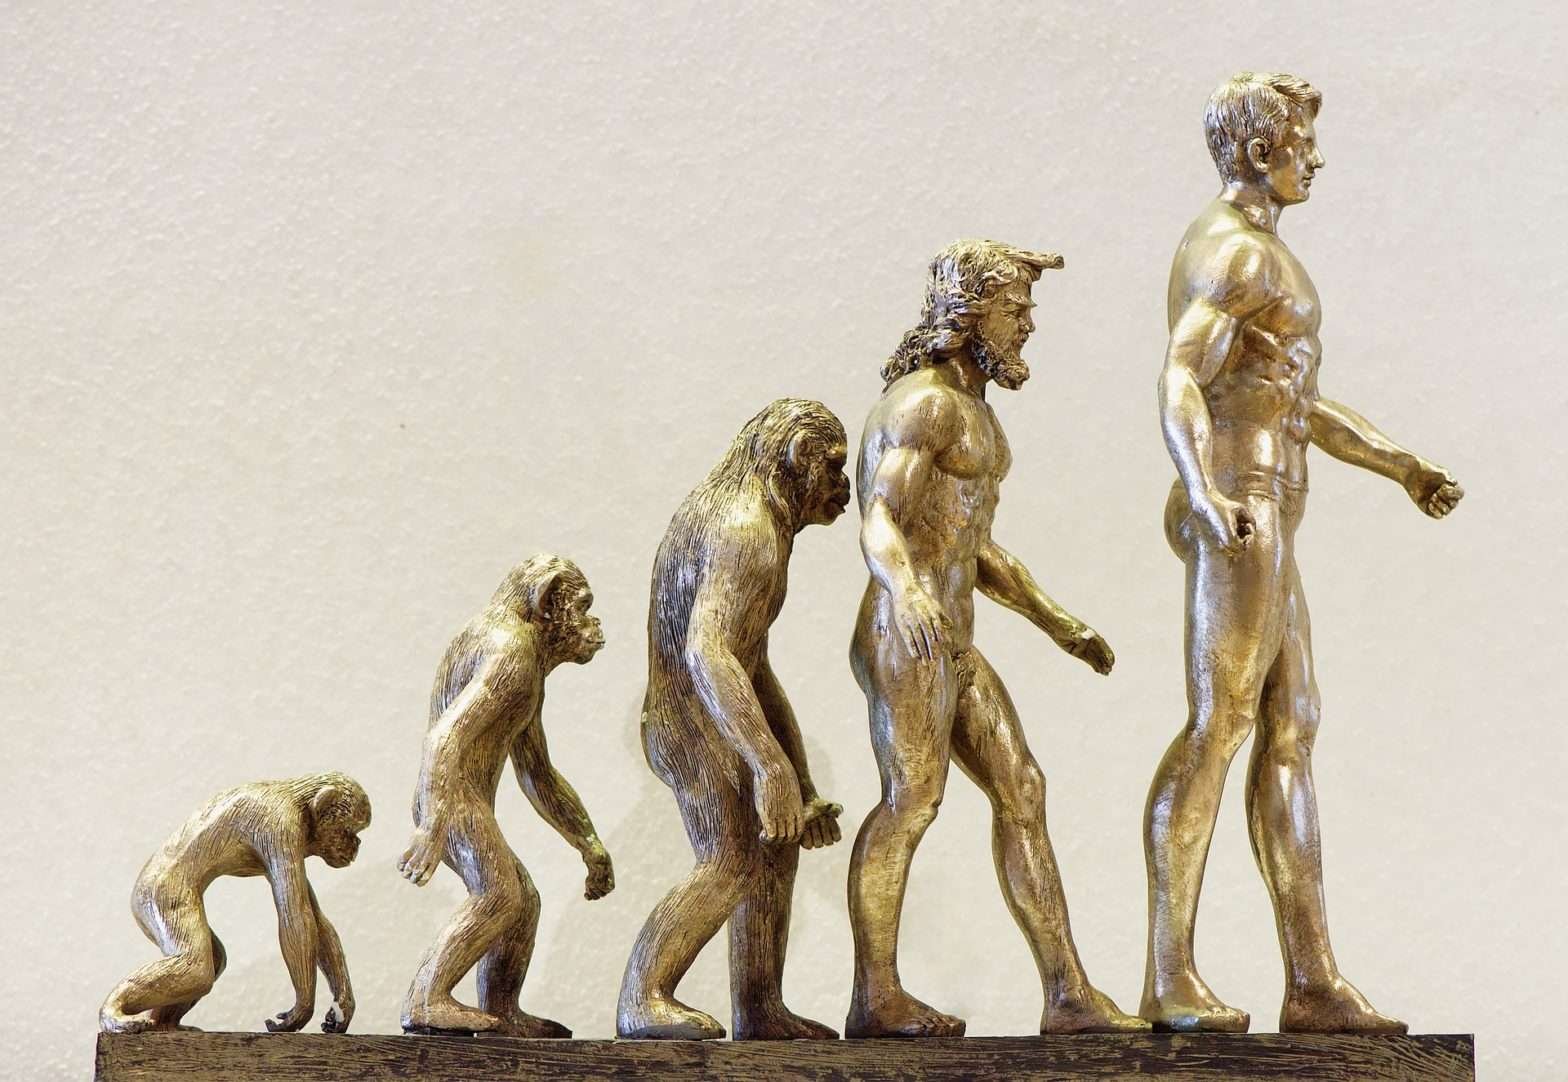 Estátuas de bronze mostrando a evolução do ser humano